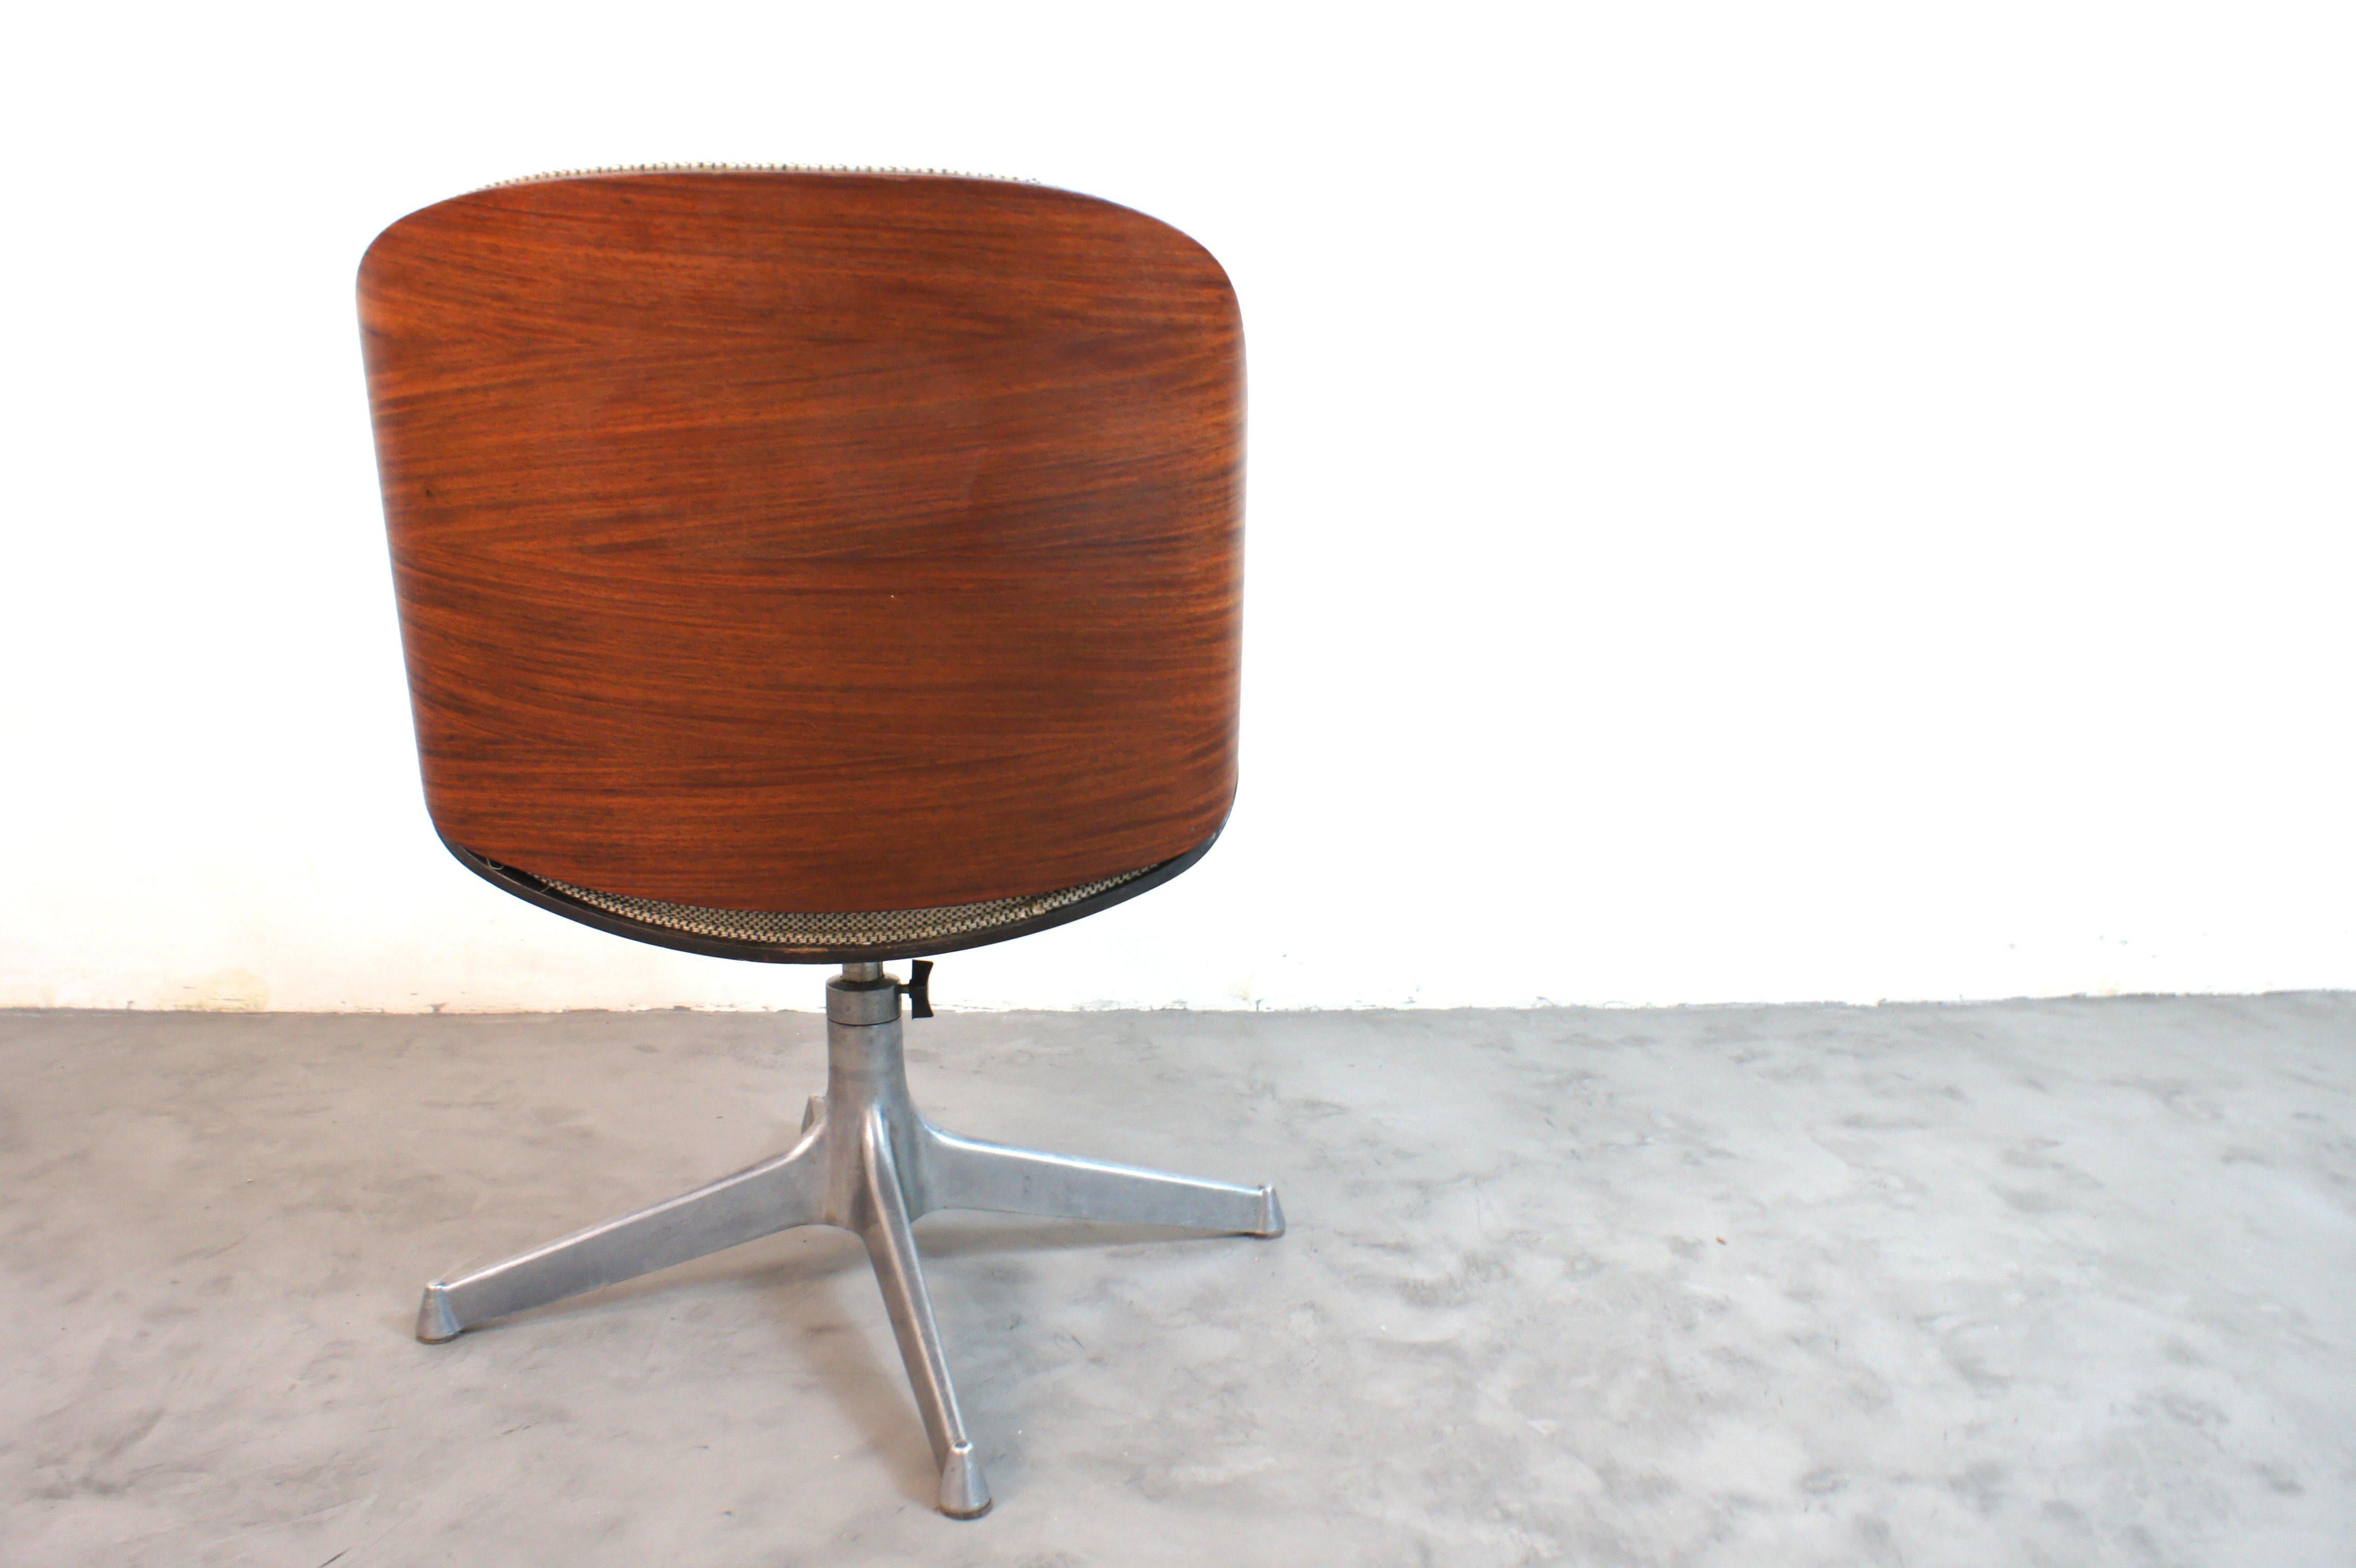 Sedia da ufficio girevole prodotta da M.I.M (mobili italiani moderni) disegnata da Ico e Luisa Parisi, italia anni '60.

Il telaio della sedia è in legno multistrato curvato con finitura in palissandro, la base è in alluminio a 4 raggi. 

La